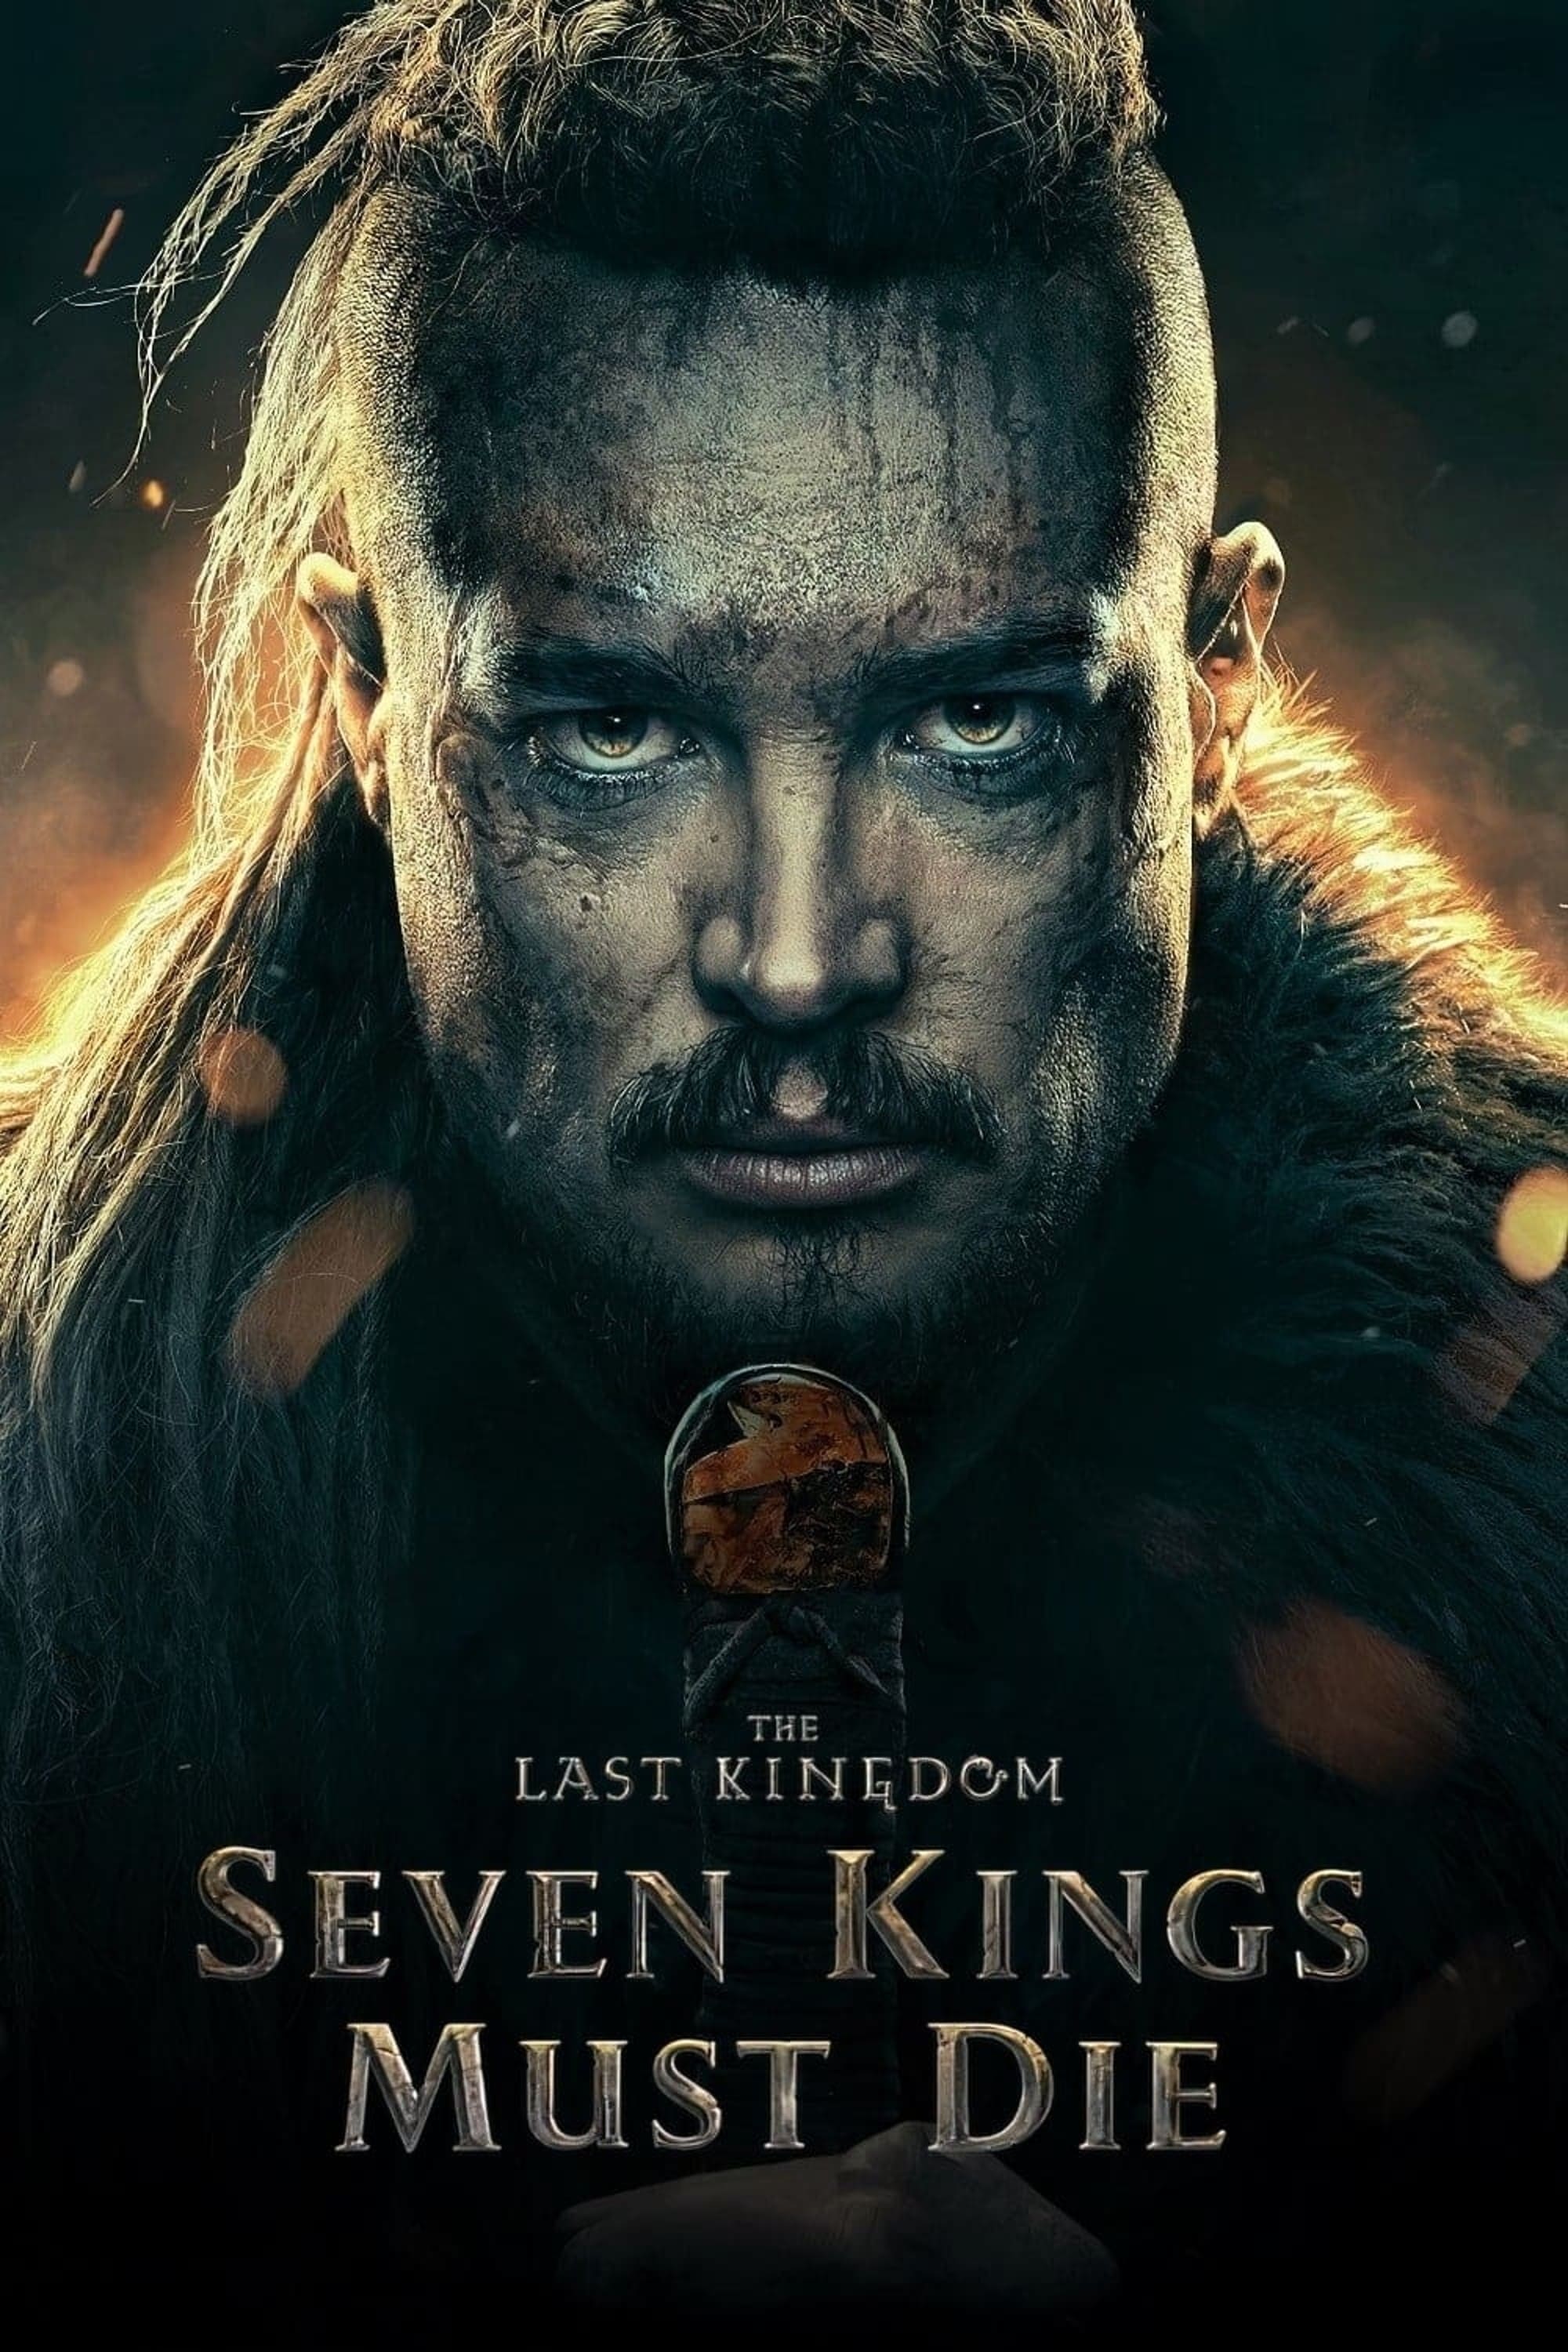 The Last Kingdom: Seven Kings Must Die Mind-Blowing Ending